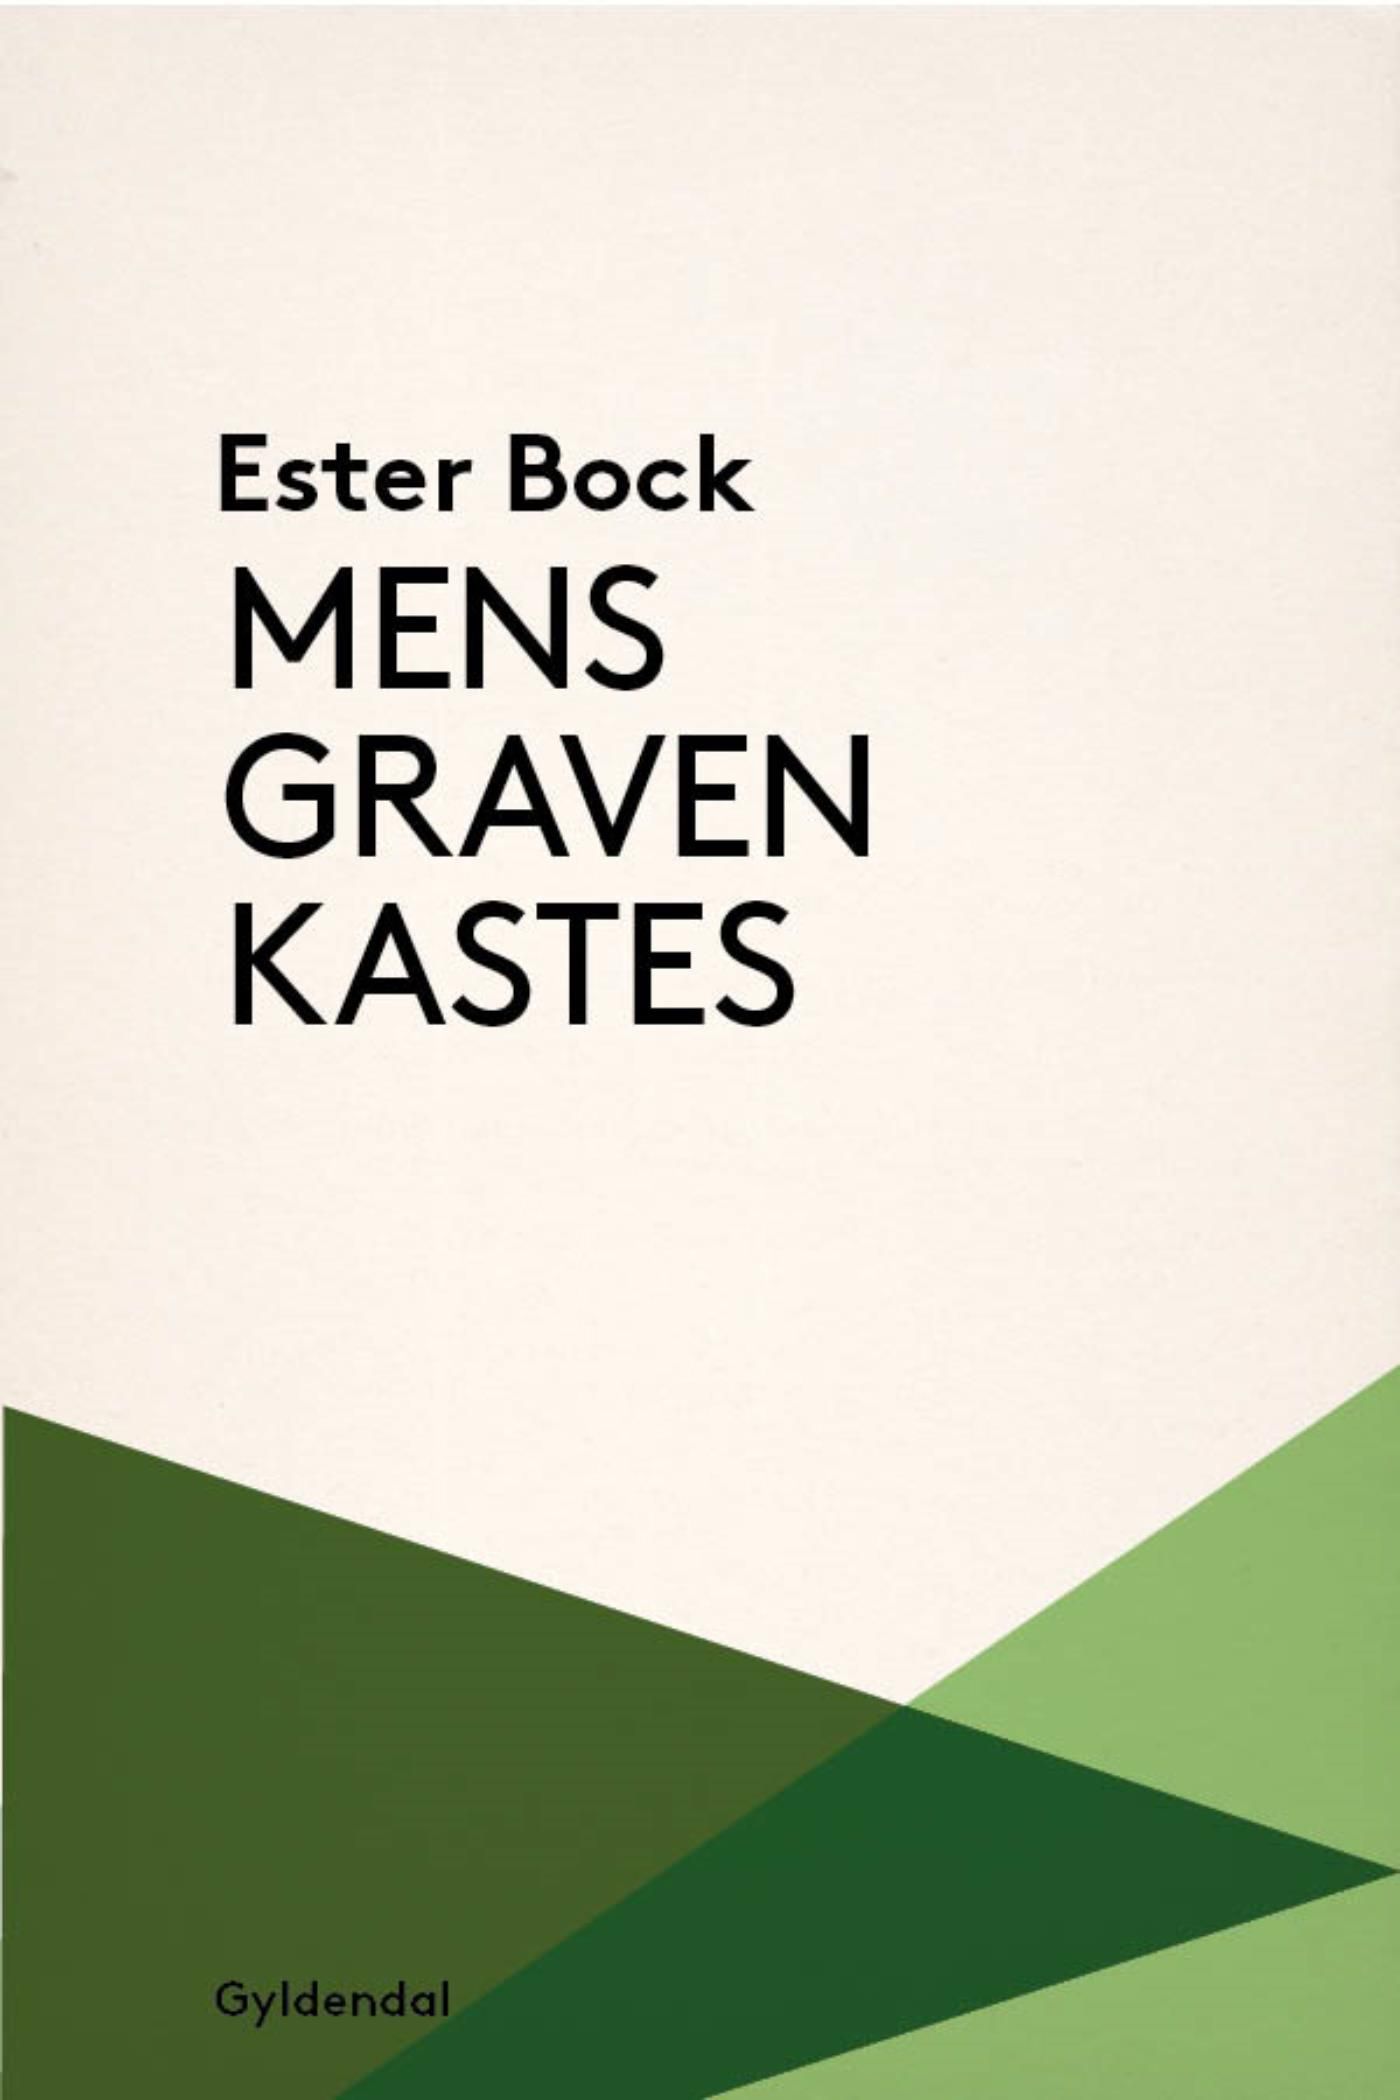 Mens graven kastes, e-bok av Ester Bock